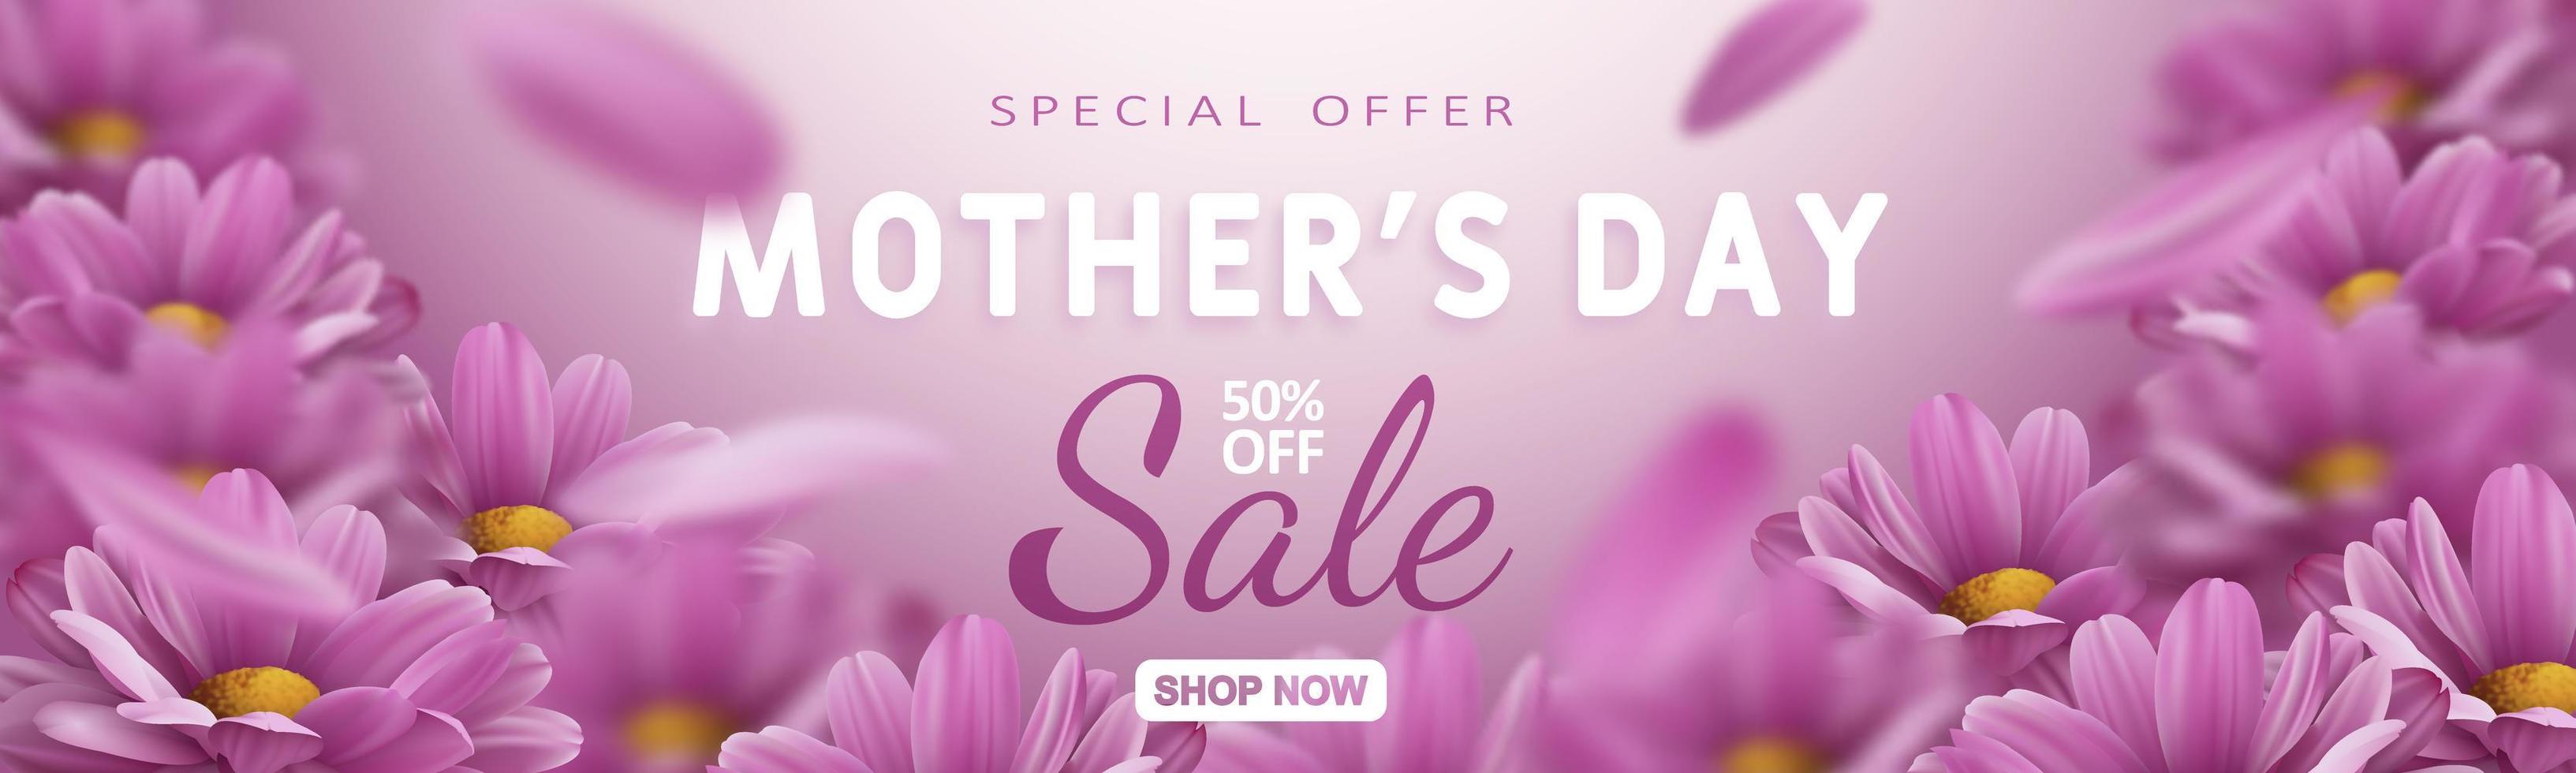 Specialerbjudande. mors dag rea banner med realistiska krysantemum blommor och reklam rabatt text dekoration. vektor illustration